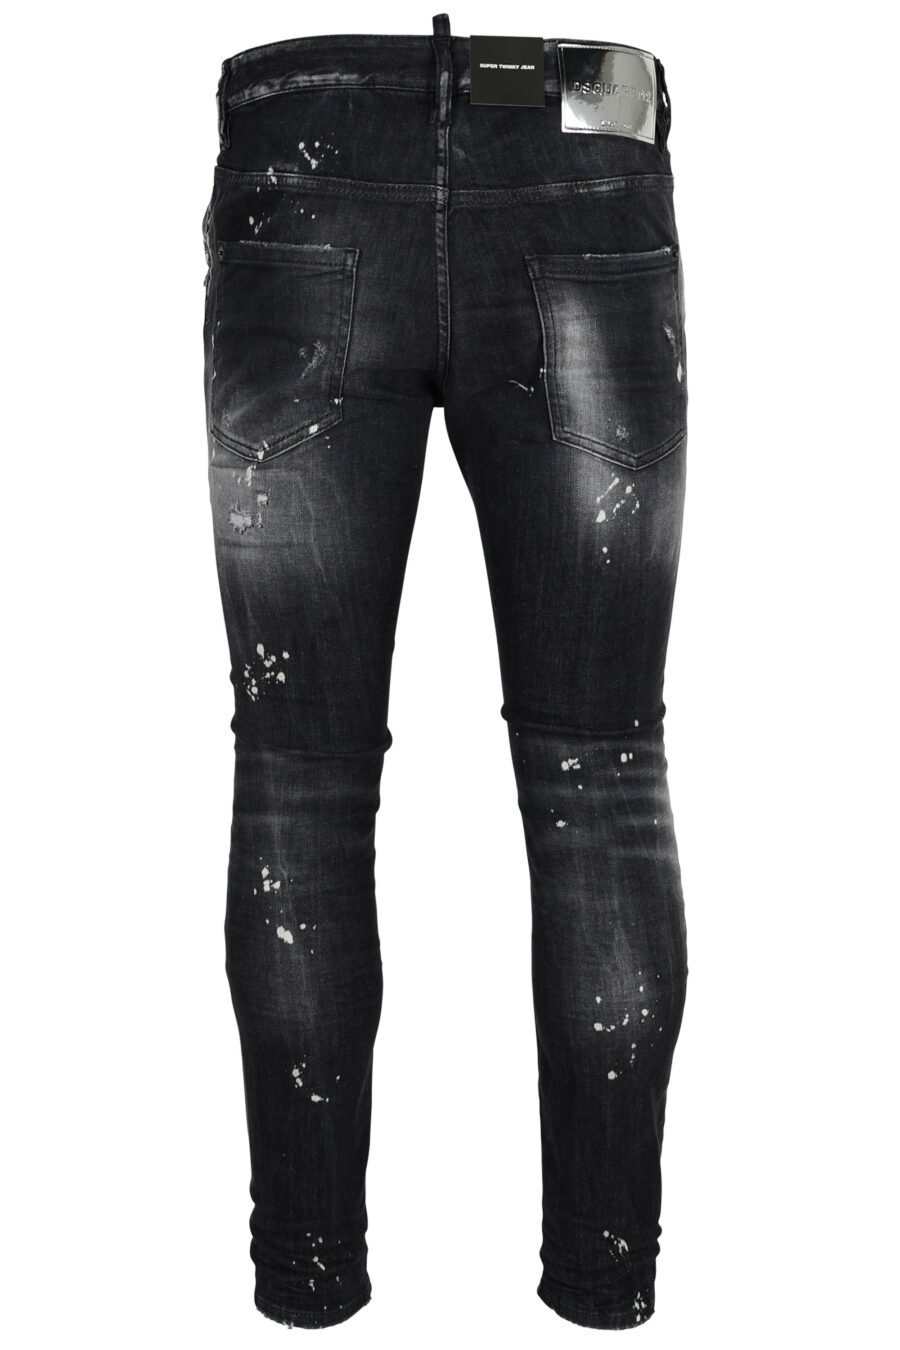 Schwarze Jeans "super twinky jean" mit Rissen und halb zerschlissen - 8054148473945 2